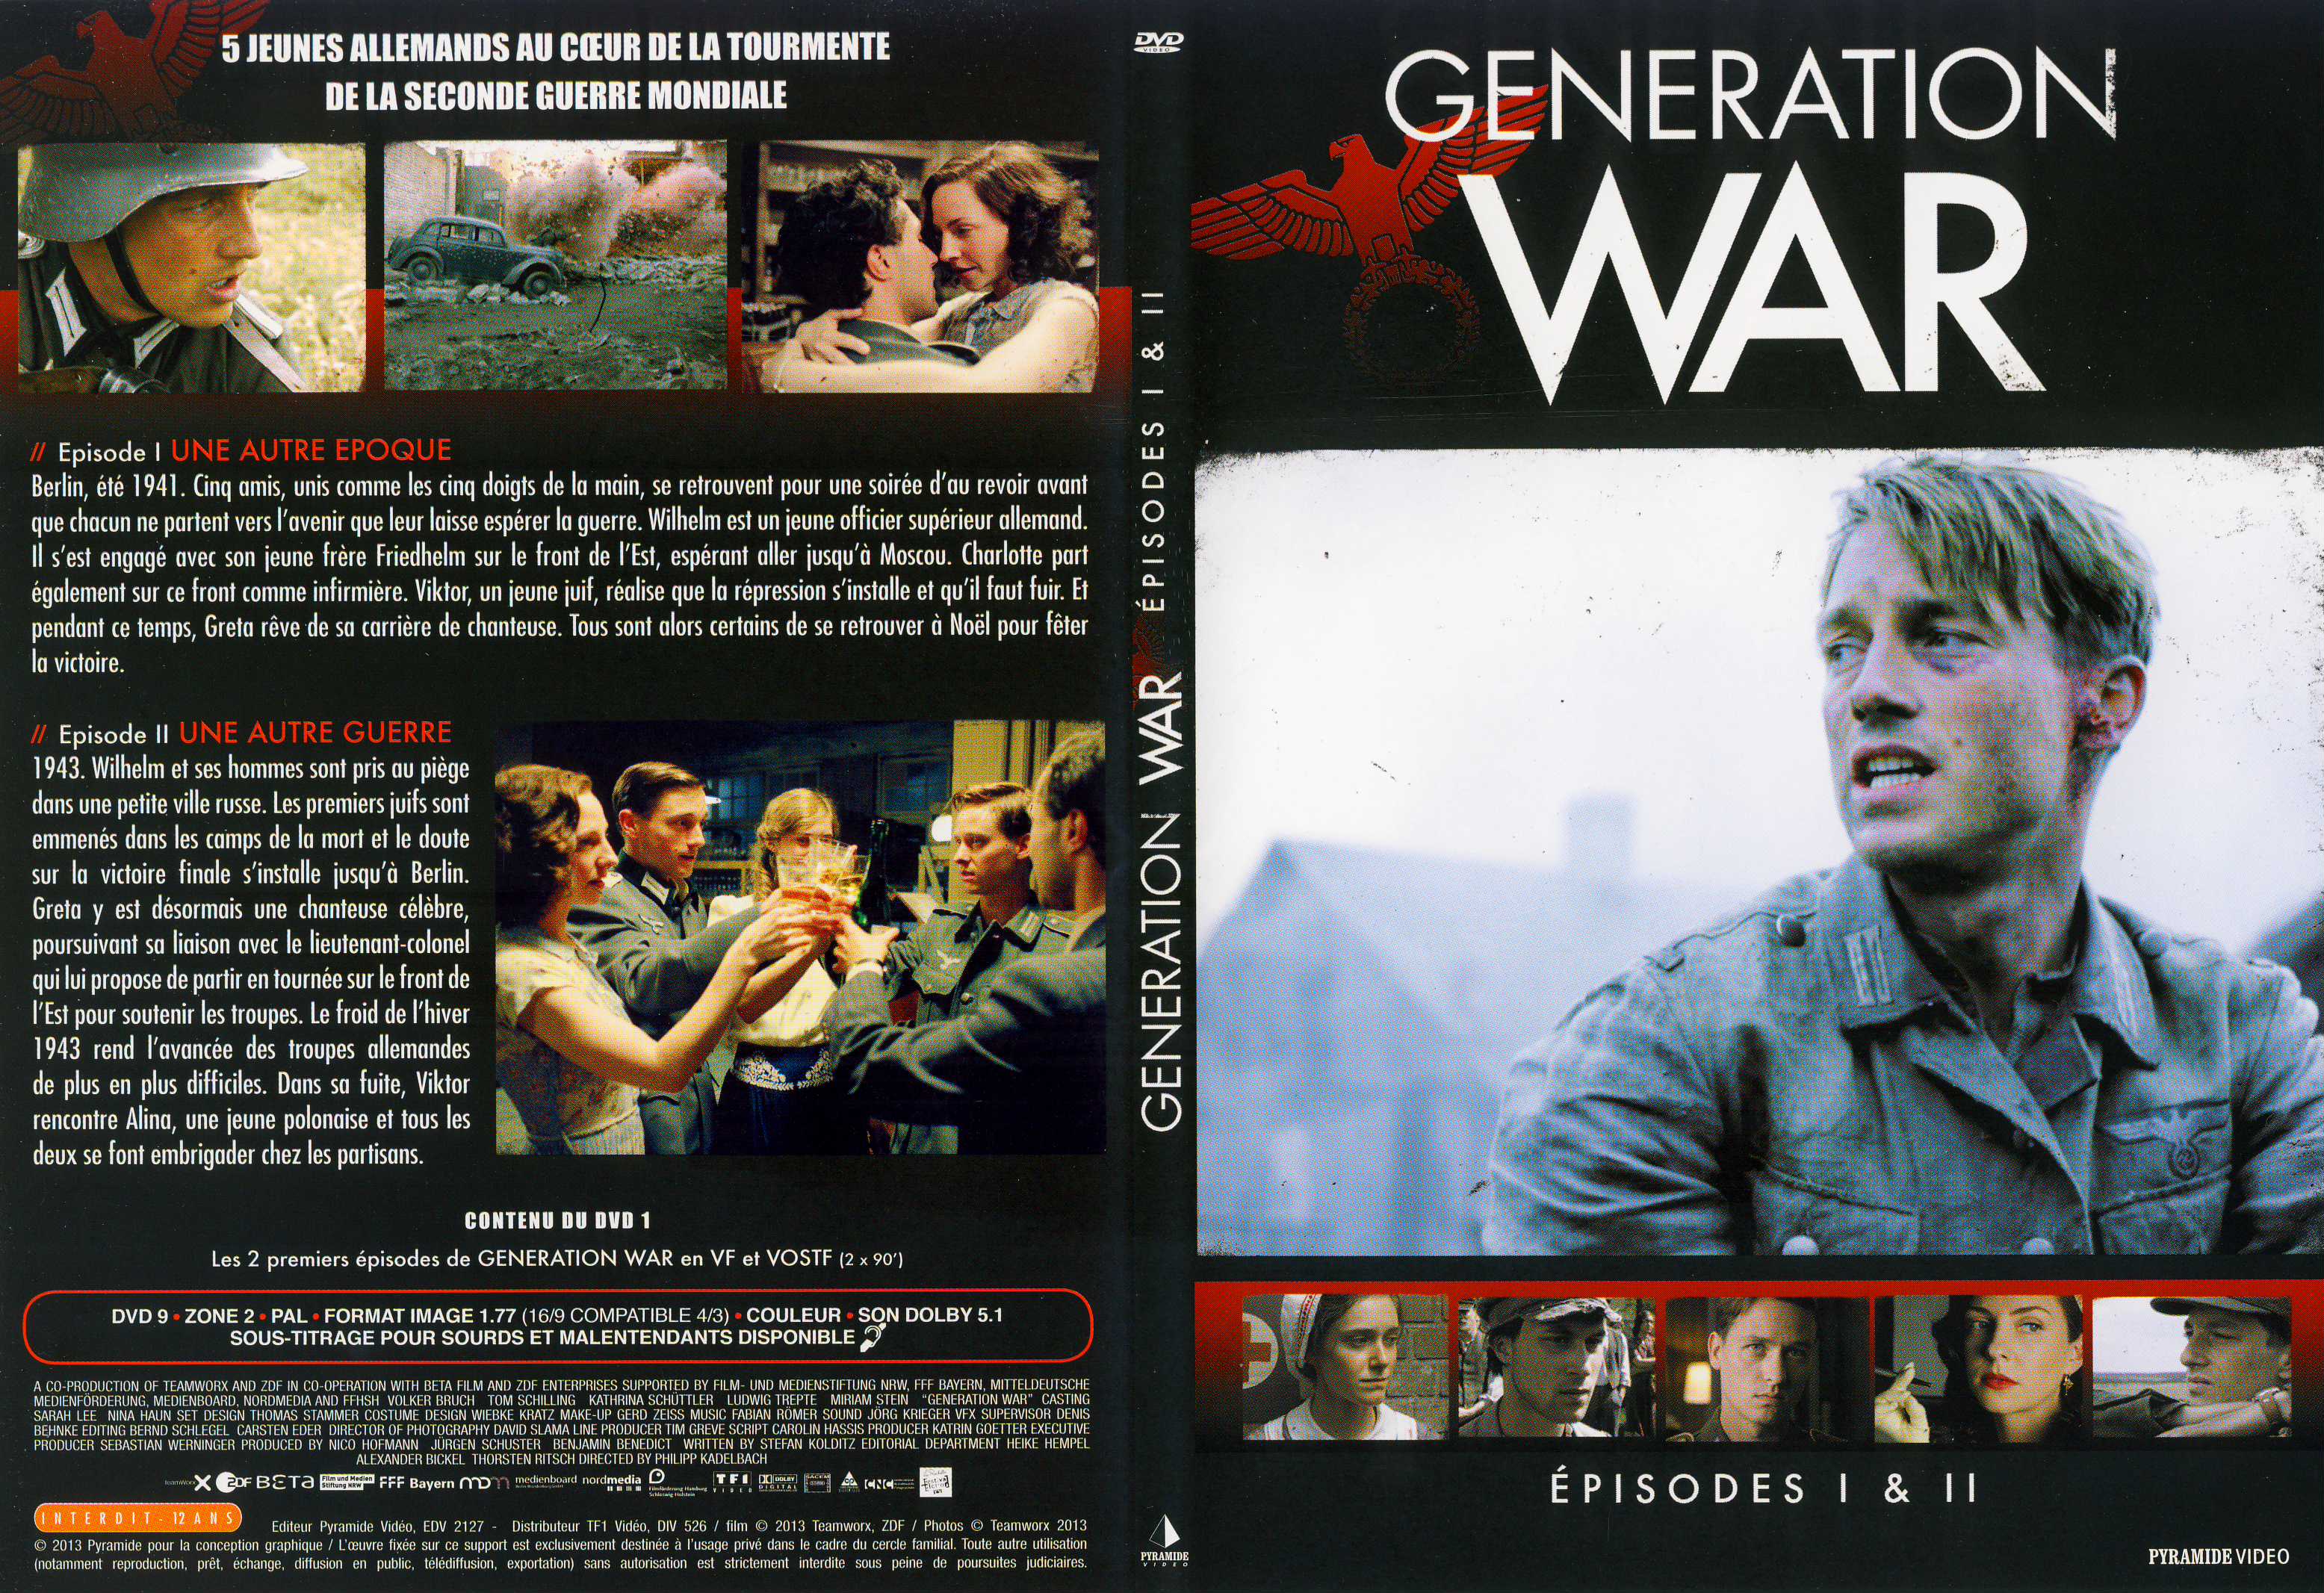 Jaquette DVD Generation War DVD 1